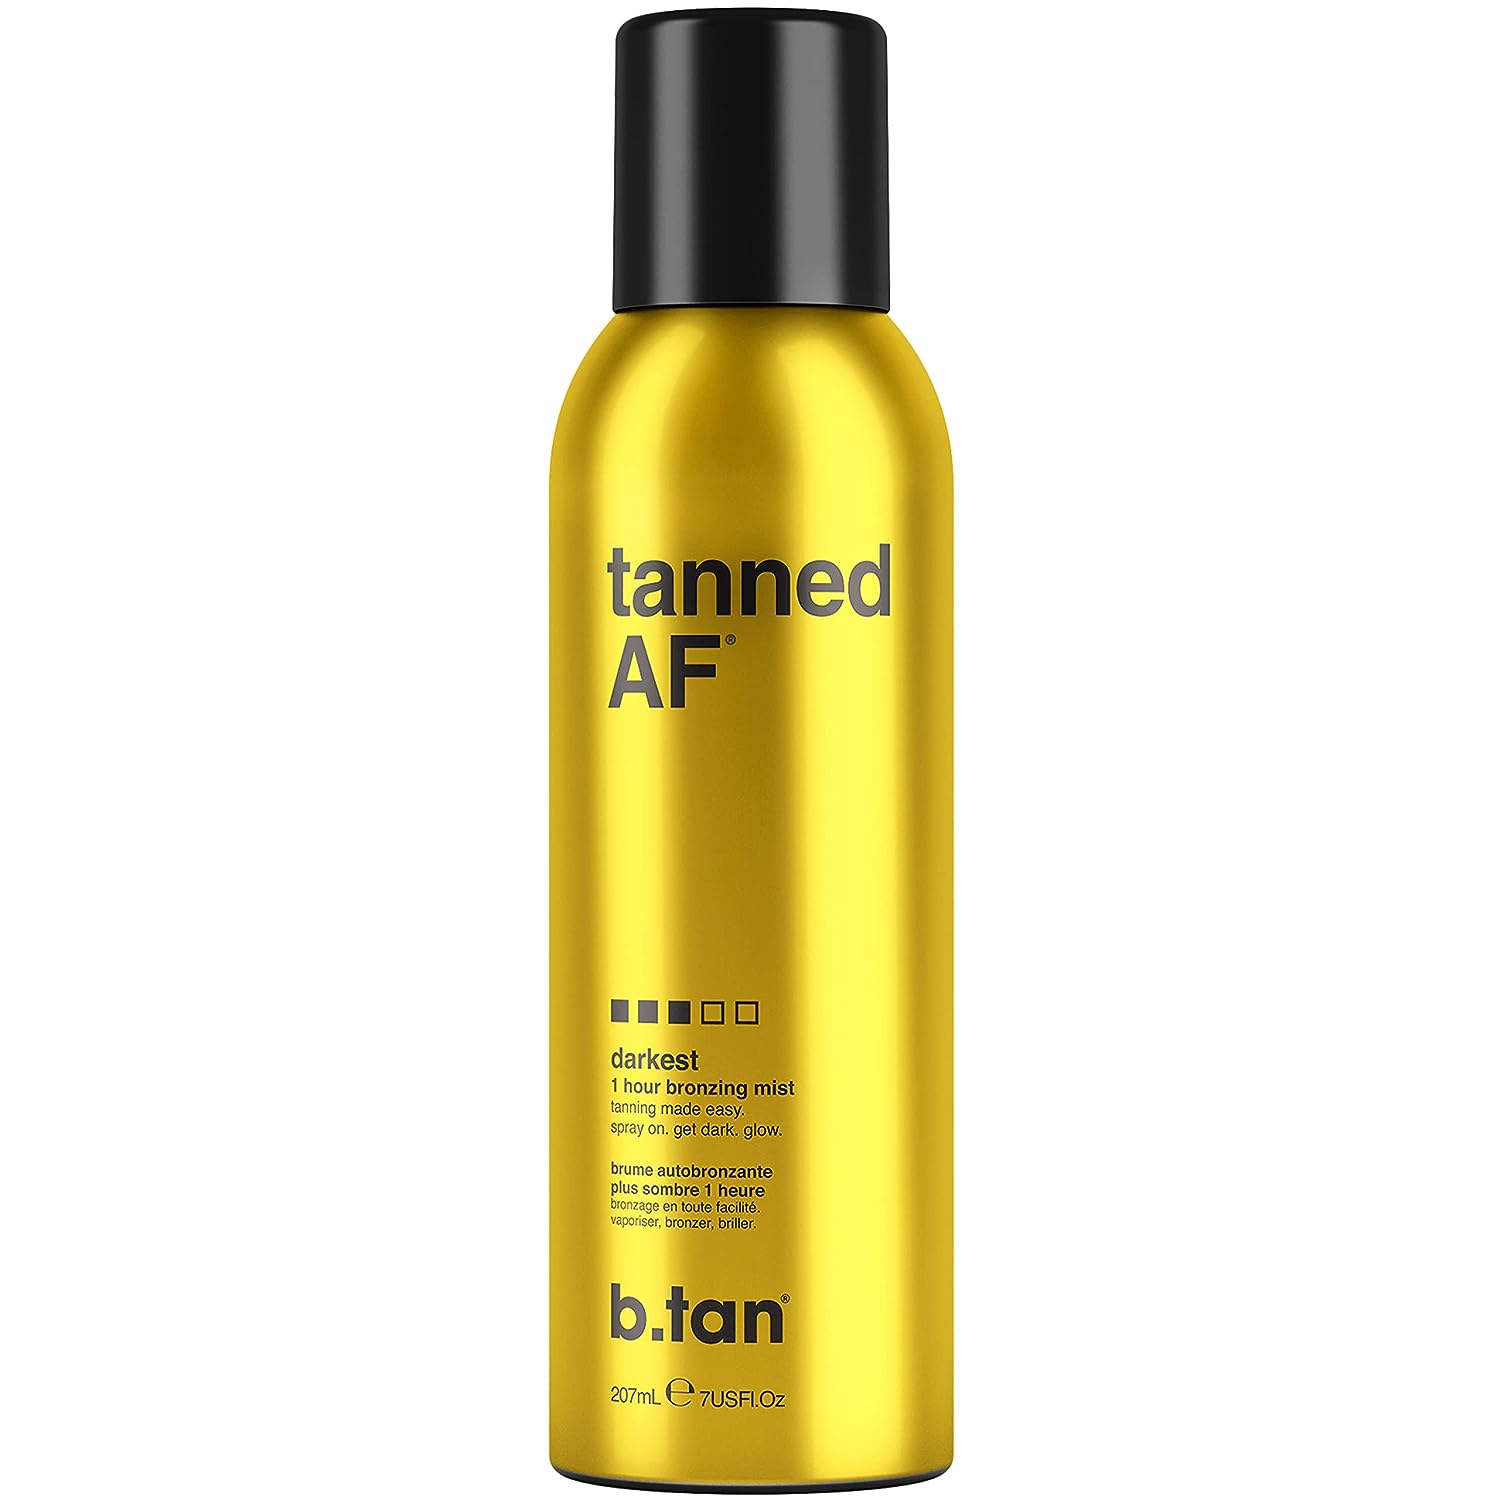 b.tan Dark Self Tanning Bronzing Mist Spray Tan - [...]